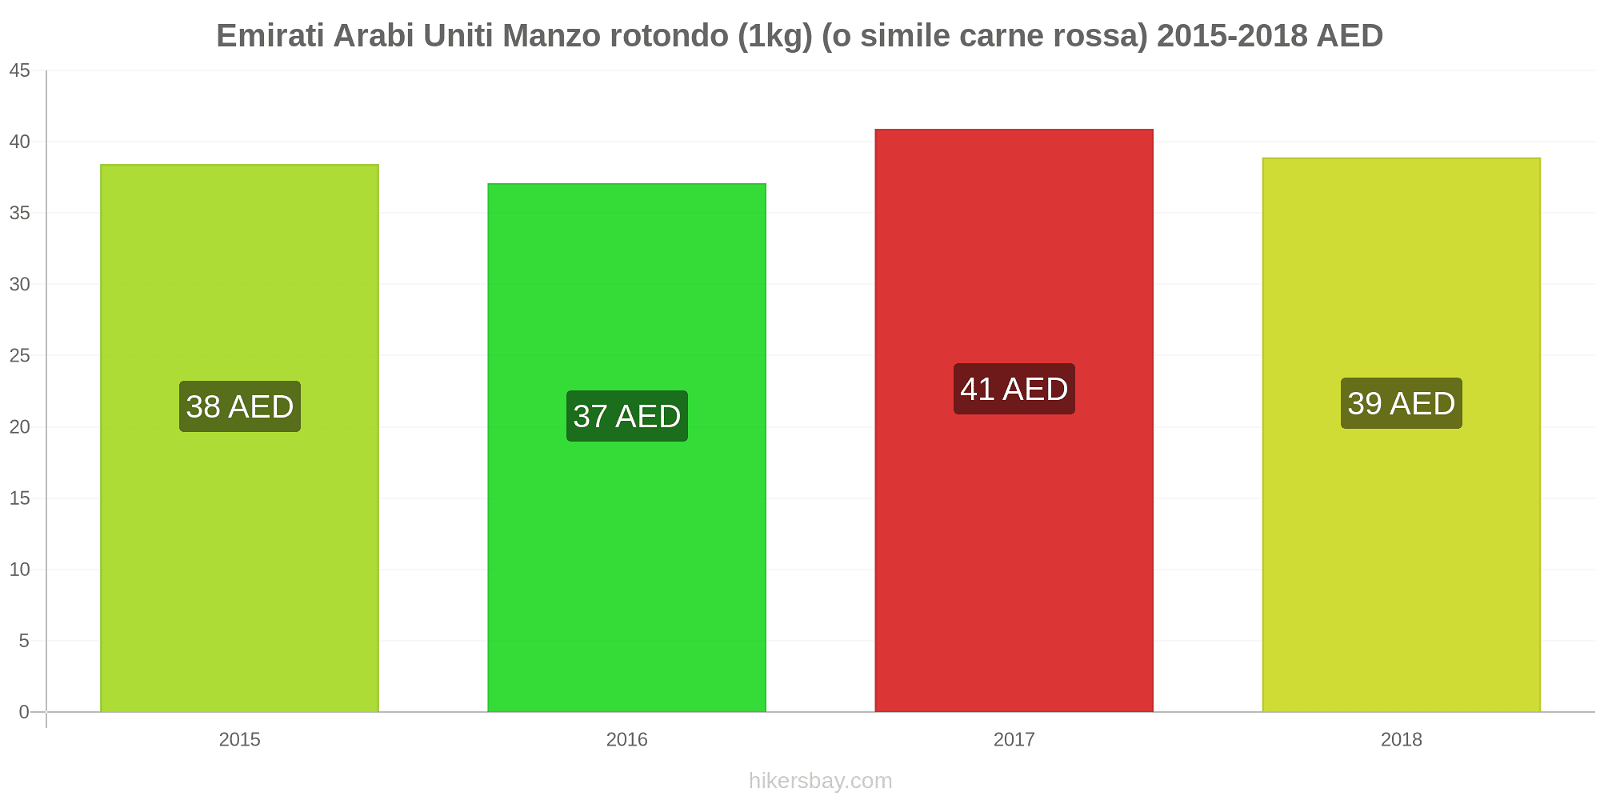 Emirati Arabi Uniti cambi di prezzo Manzo (1kg) (o carne rossa simile) hikersbay.com